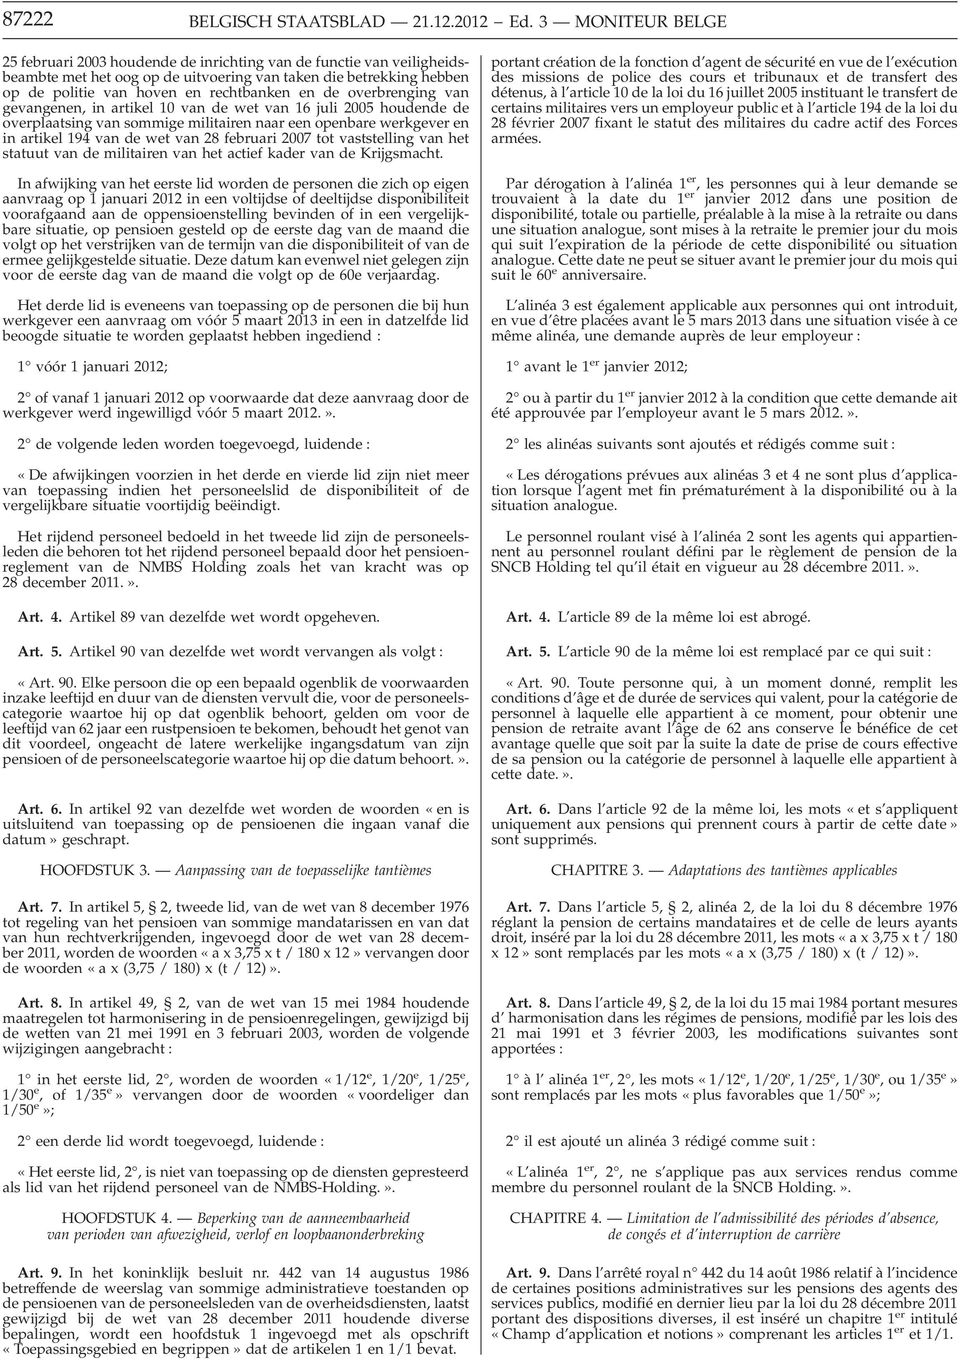 de overbrenging van gevangenen, in artikel 10 van de wet van 16 juli 2005 houdende de overplaatsing van sommige militairen naar een openbare werkgever en in artikel 194 van de wet van 28 februari